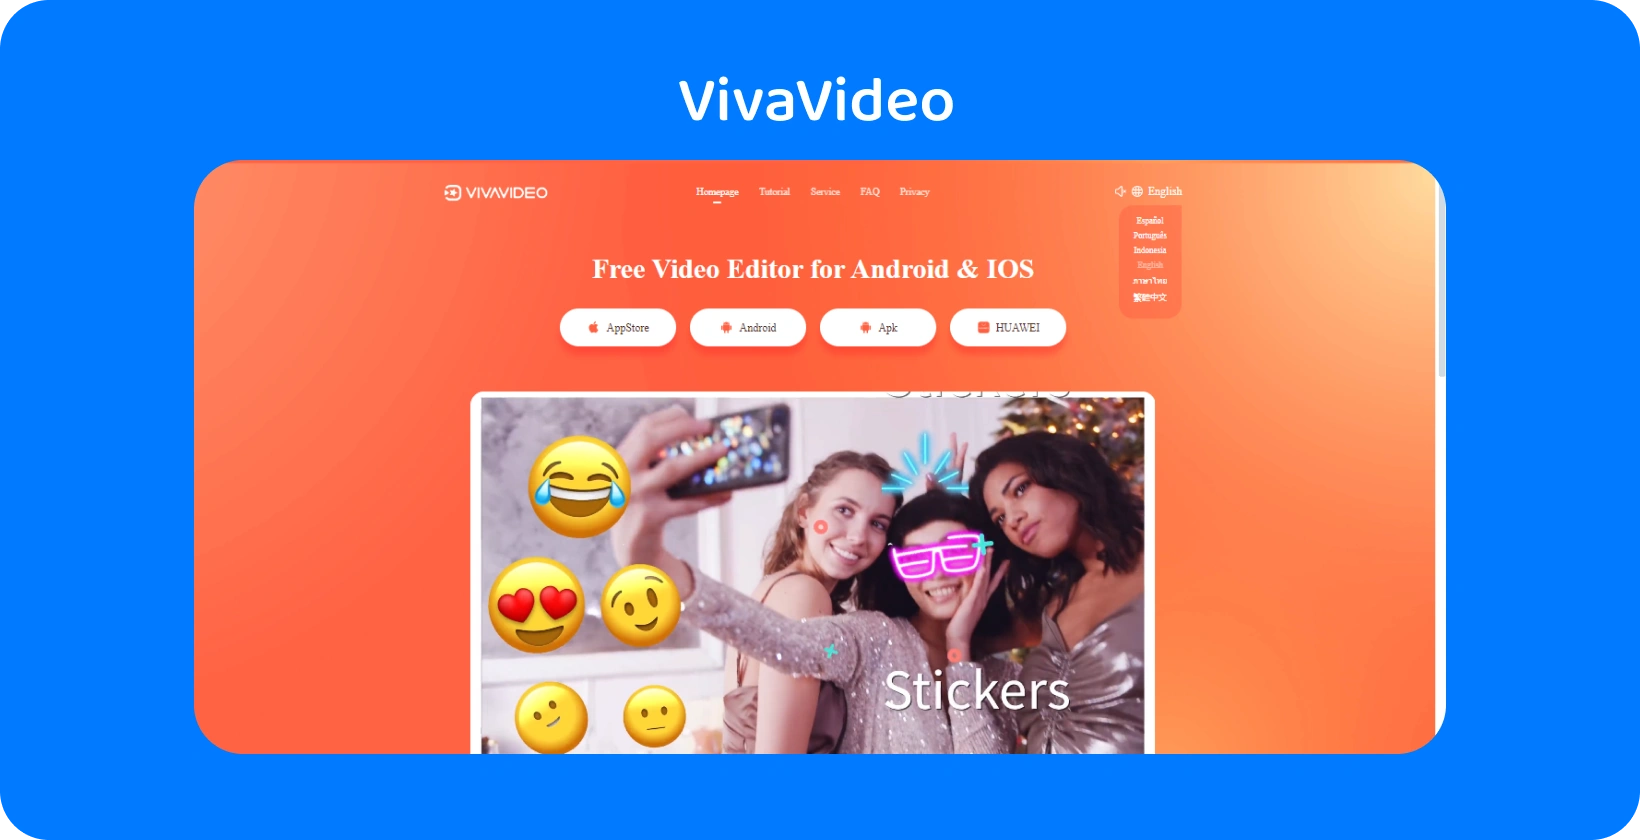 VivaVideo app-pagina met een levendige oranje achtergrond, met stickerfuncties voor het verbeteren van video's op Android en iOS.
